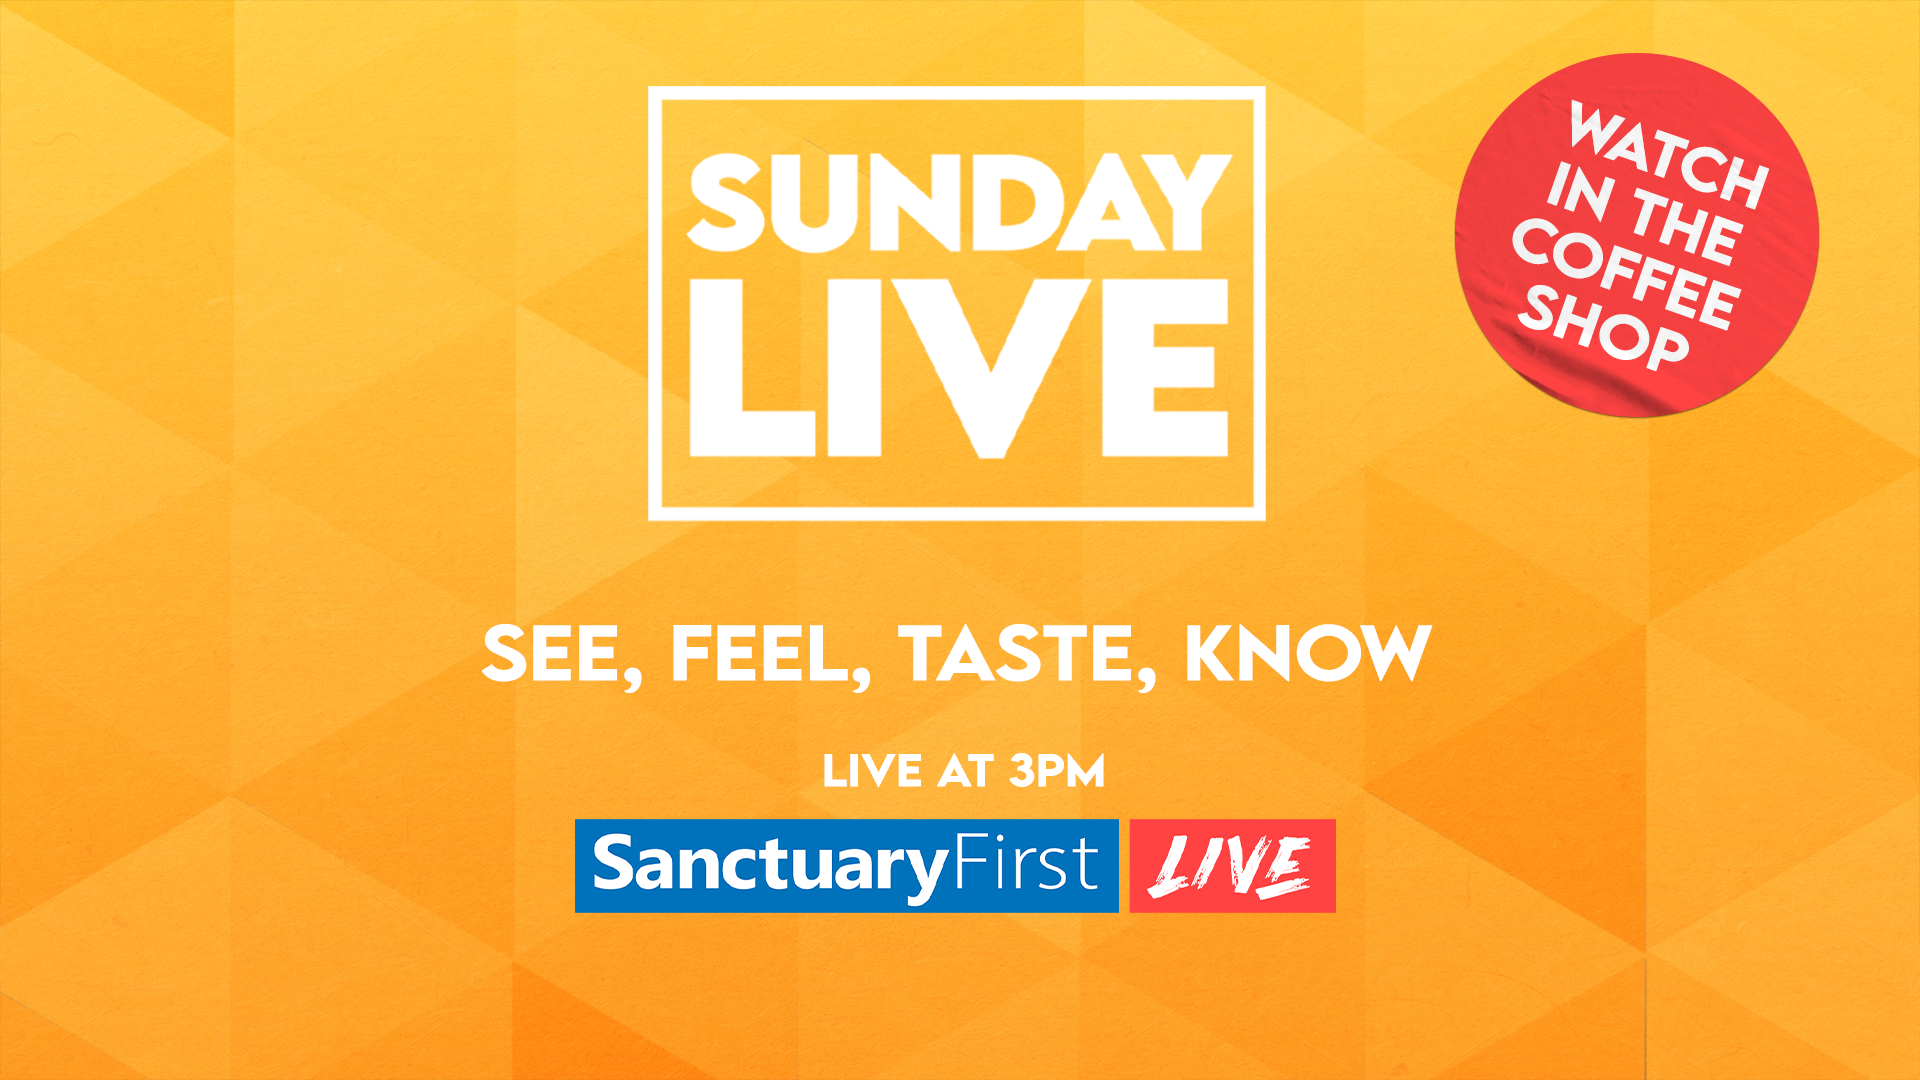 Sunday Live - See, Feel, Taste, Know